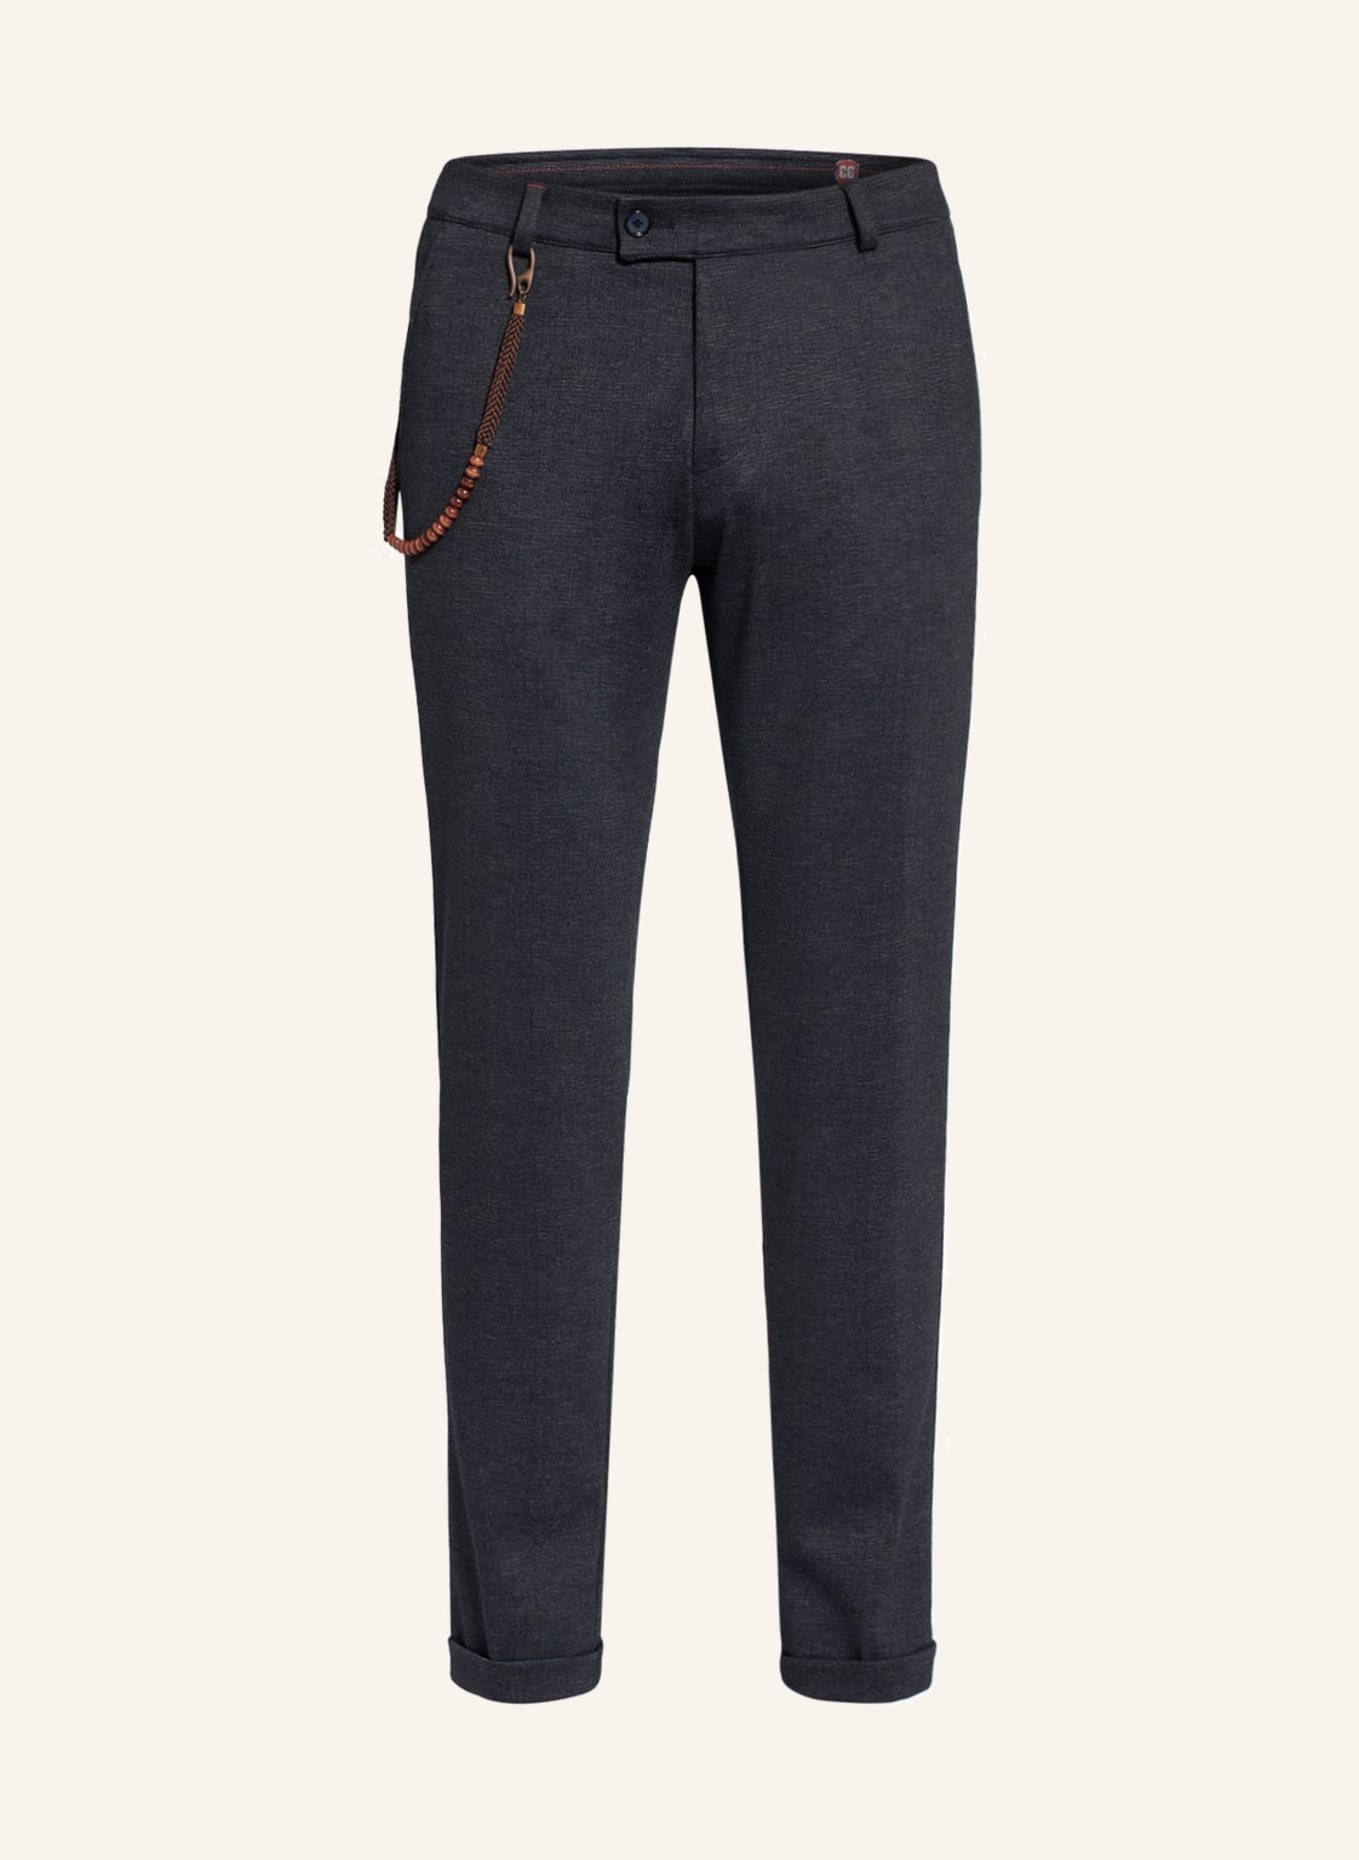 CG - CLUB of GENTS Suit trousers CONN Super slim fit, Color: 63 BLAU DUNKEL (Image 1)